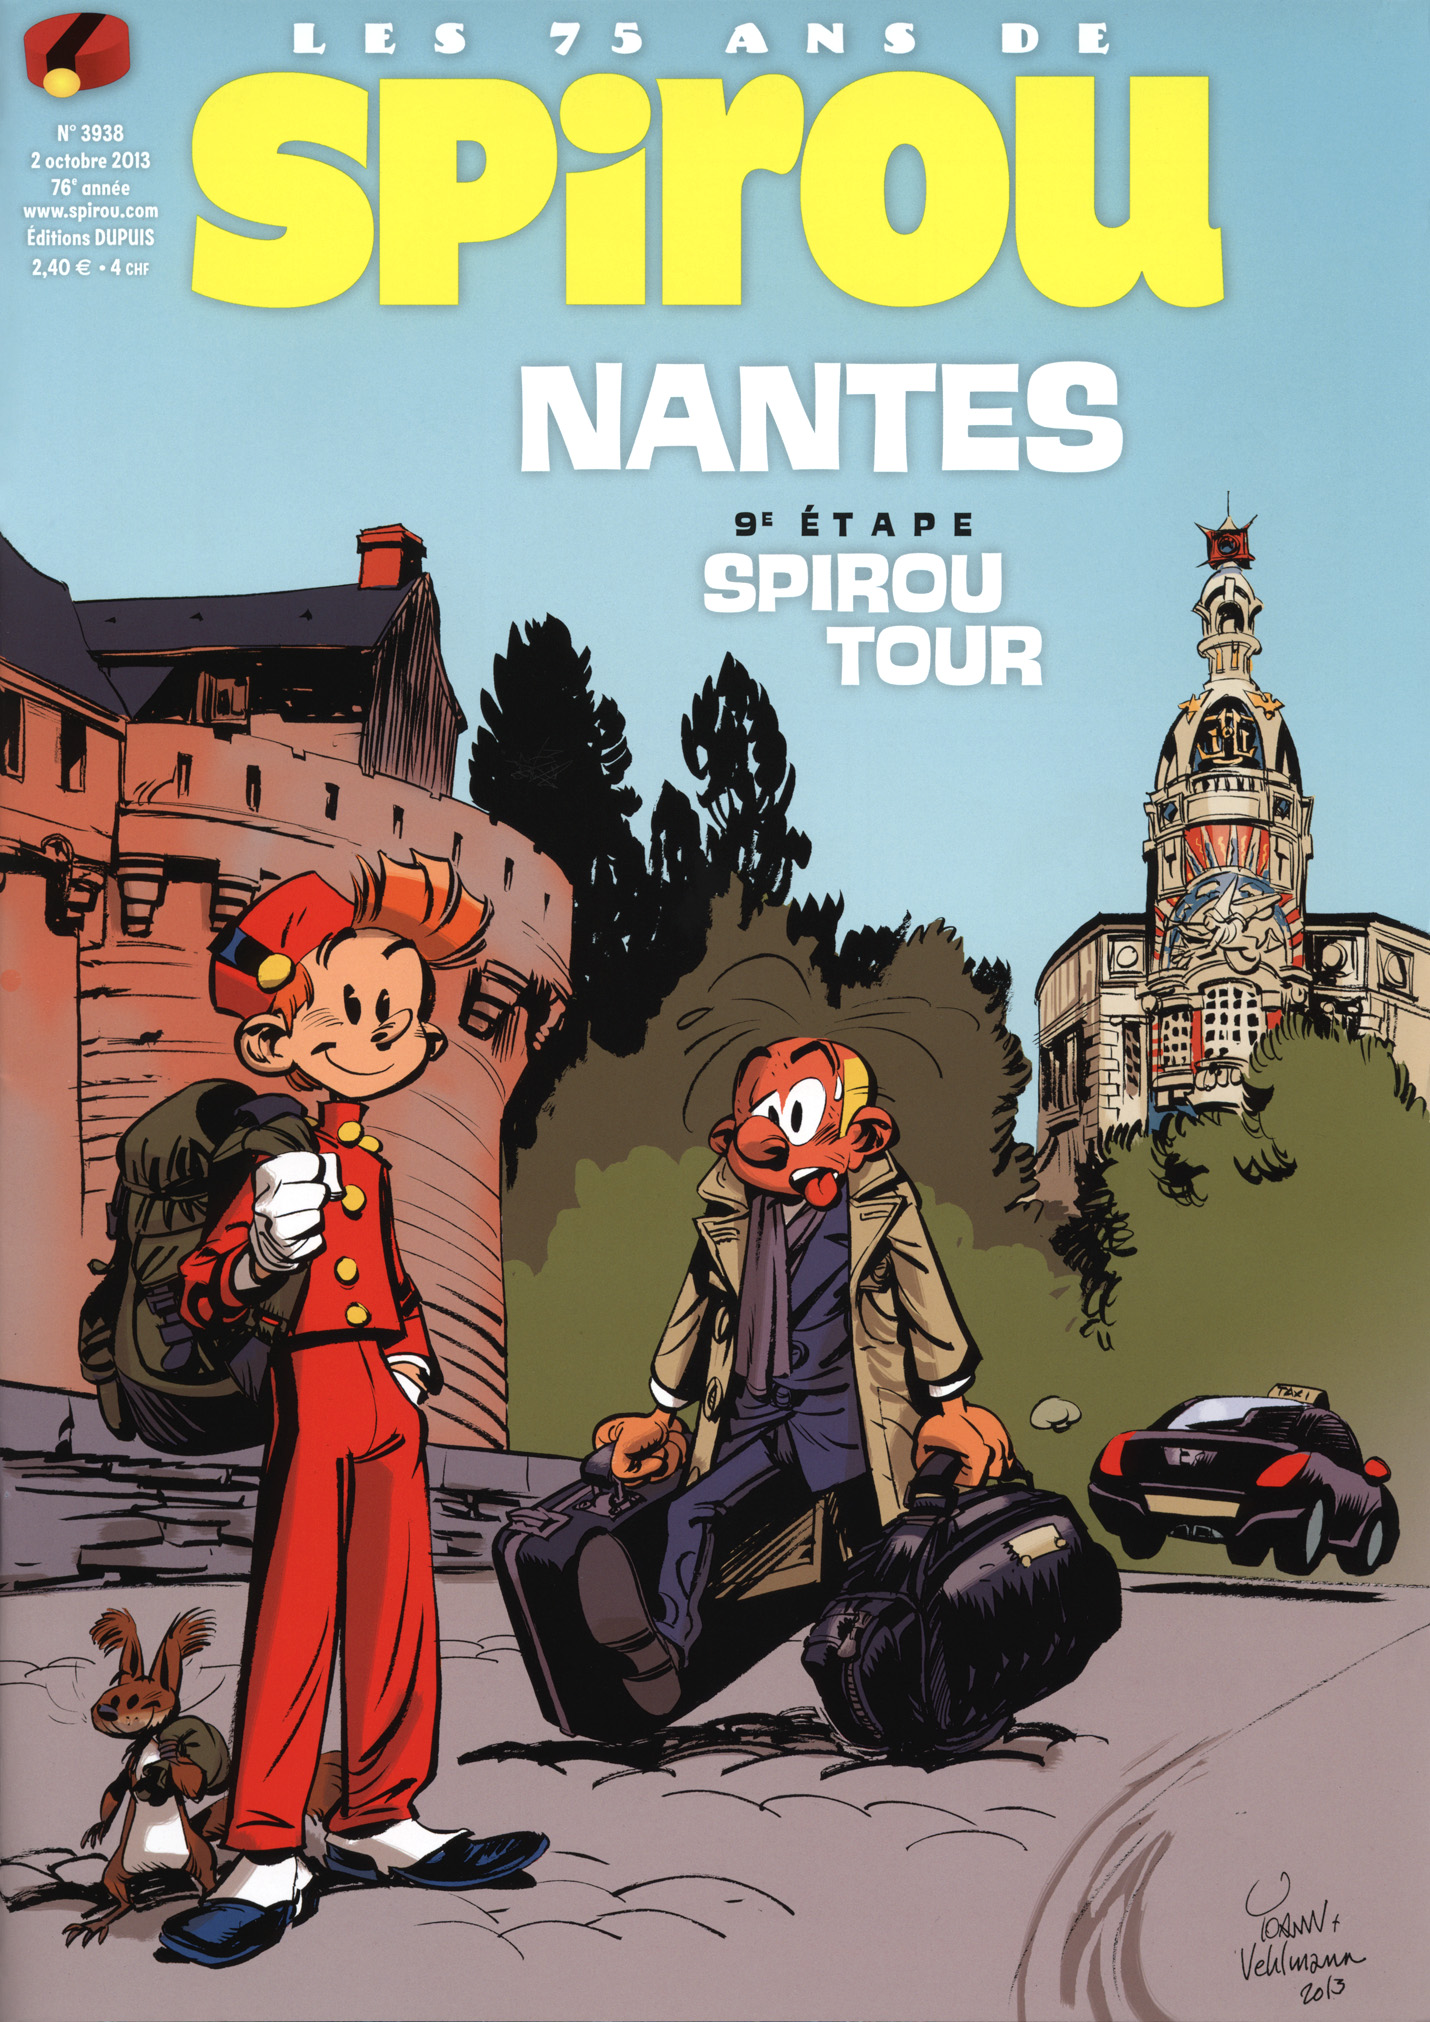 Spirou Tour: Nantes